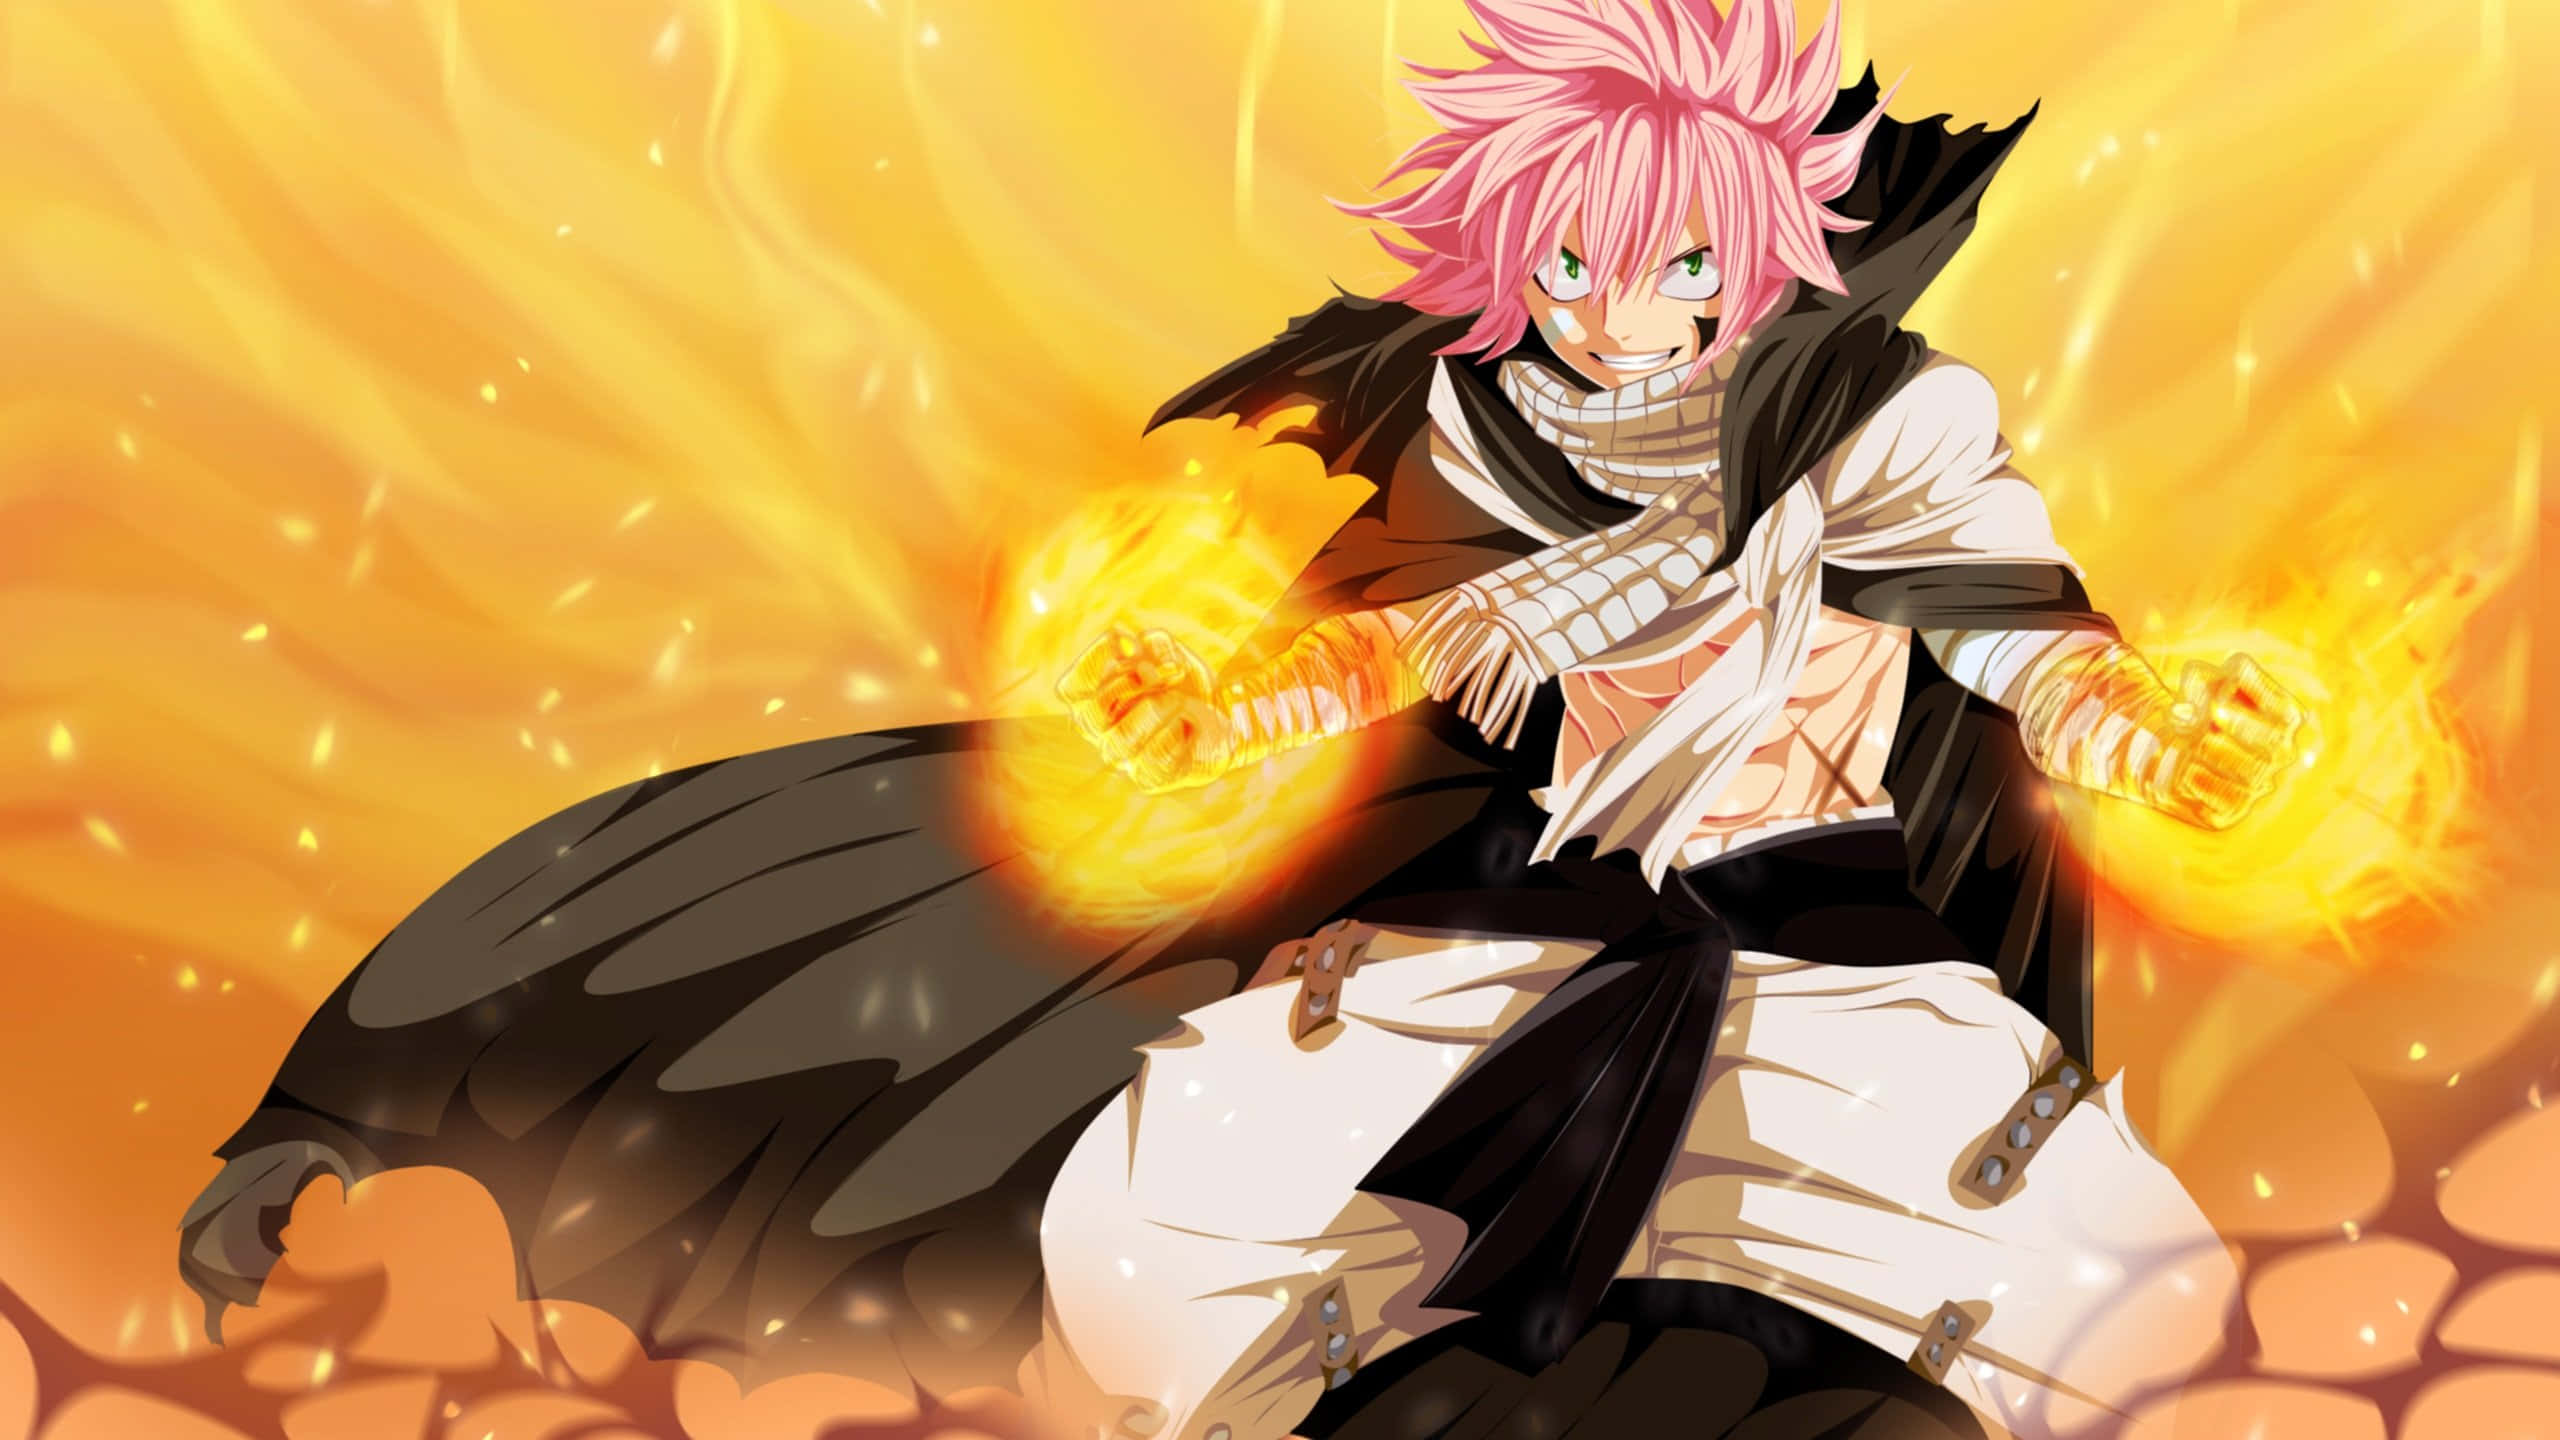 Natsu Dragneel Unleashing Power in a Fiery Battle Wallpaper